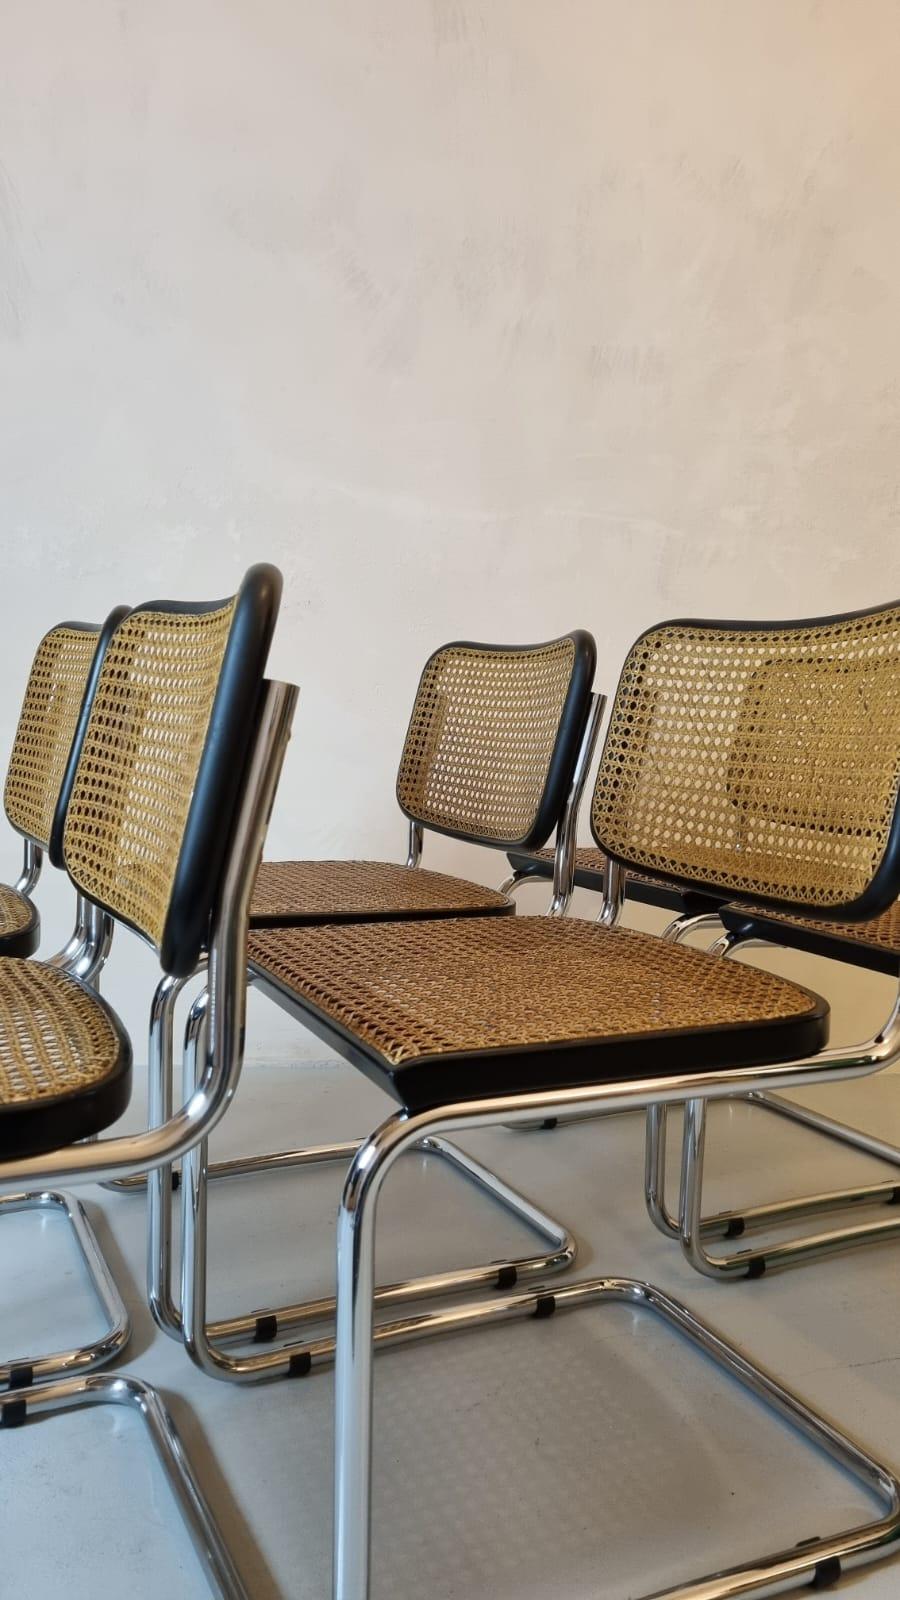 6 Stühle Cesca, entworfen von Marcel Breuer, hergestellt von Gavina 1960.
Die Stühle weisen leichte Gebrauchsspuren auf, die Sitze sind restauriert.
Das Zusammentreffen von Wiener Stroh und Metallrohr, von Tradition und Innovation, von Thonet und